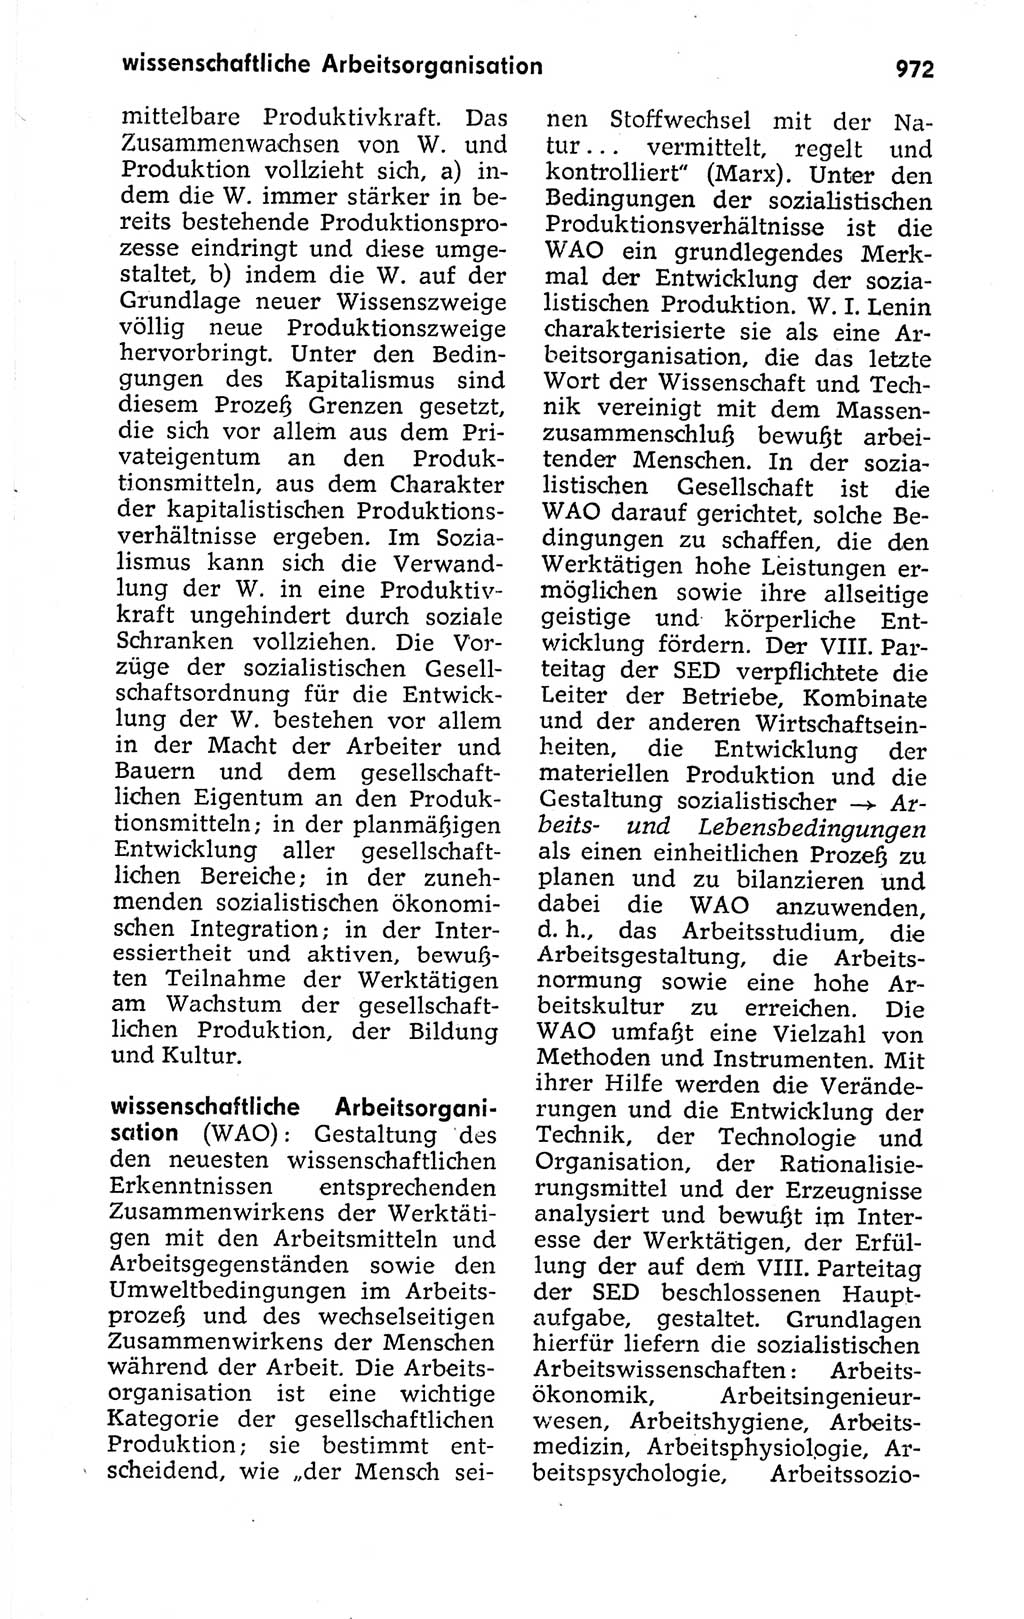 Kleines politisches Wörterbuch [Deutsche Demokratische Republik (DDR)] 1973, Seite 972 (Kl. pol. Wb. DDR 1973, S. 972)